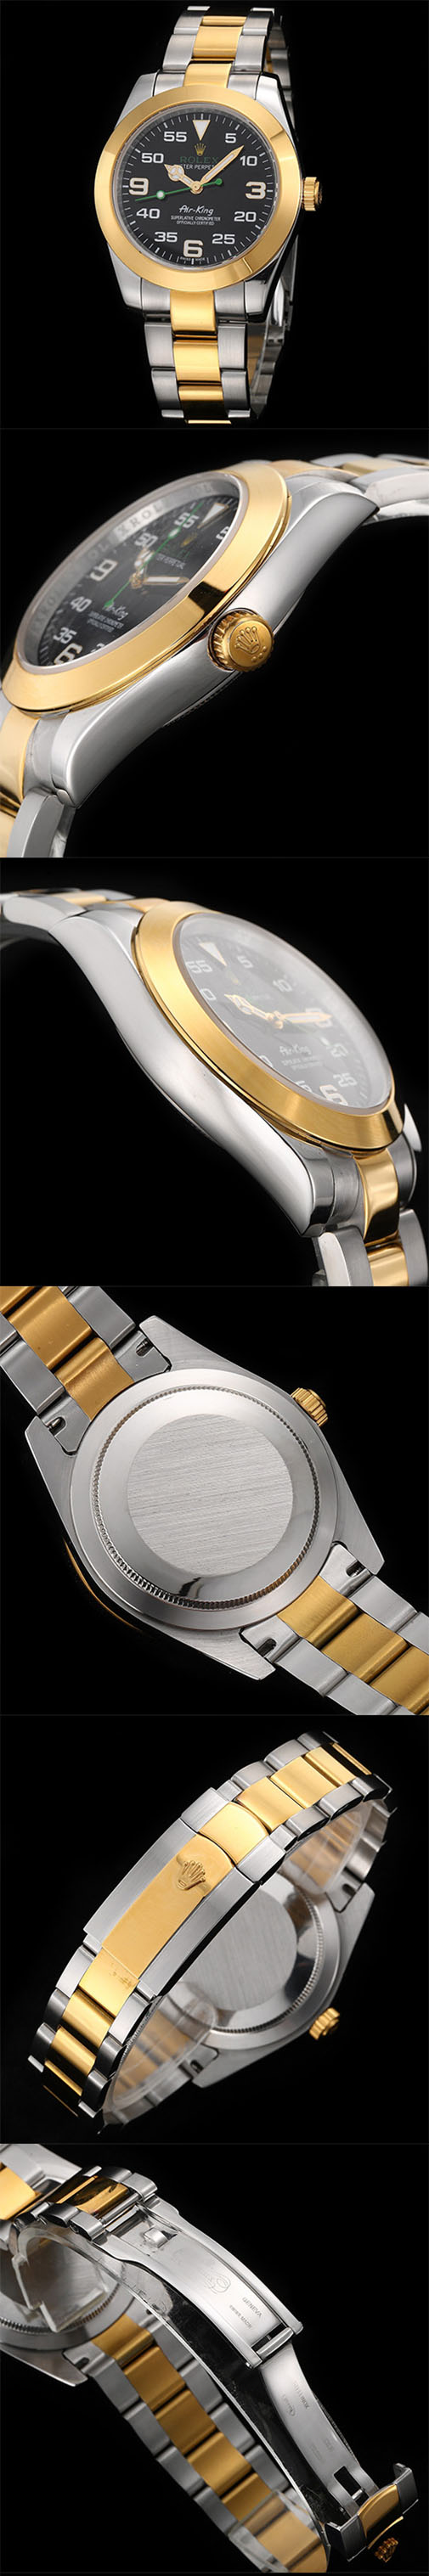 【相当安値】エアキングコピー 116900激安 スタイリッシュ腕時計